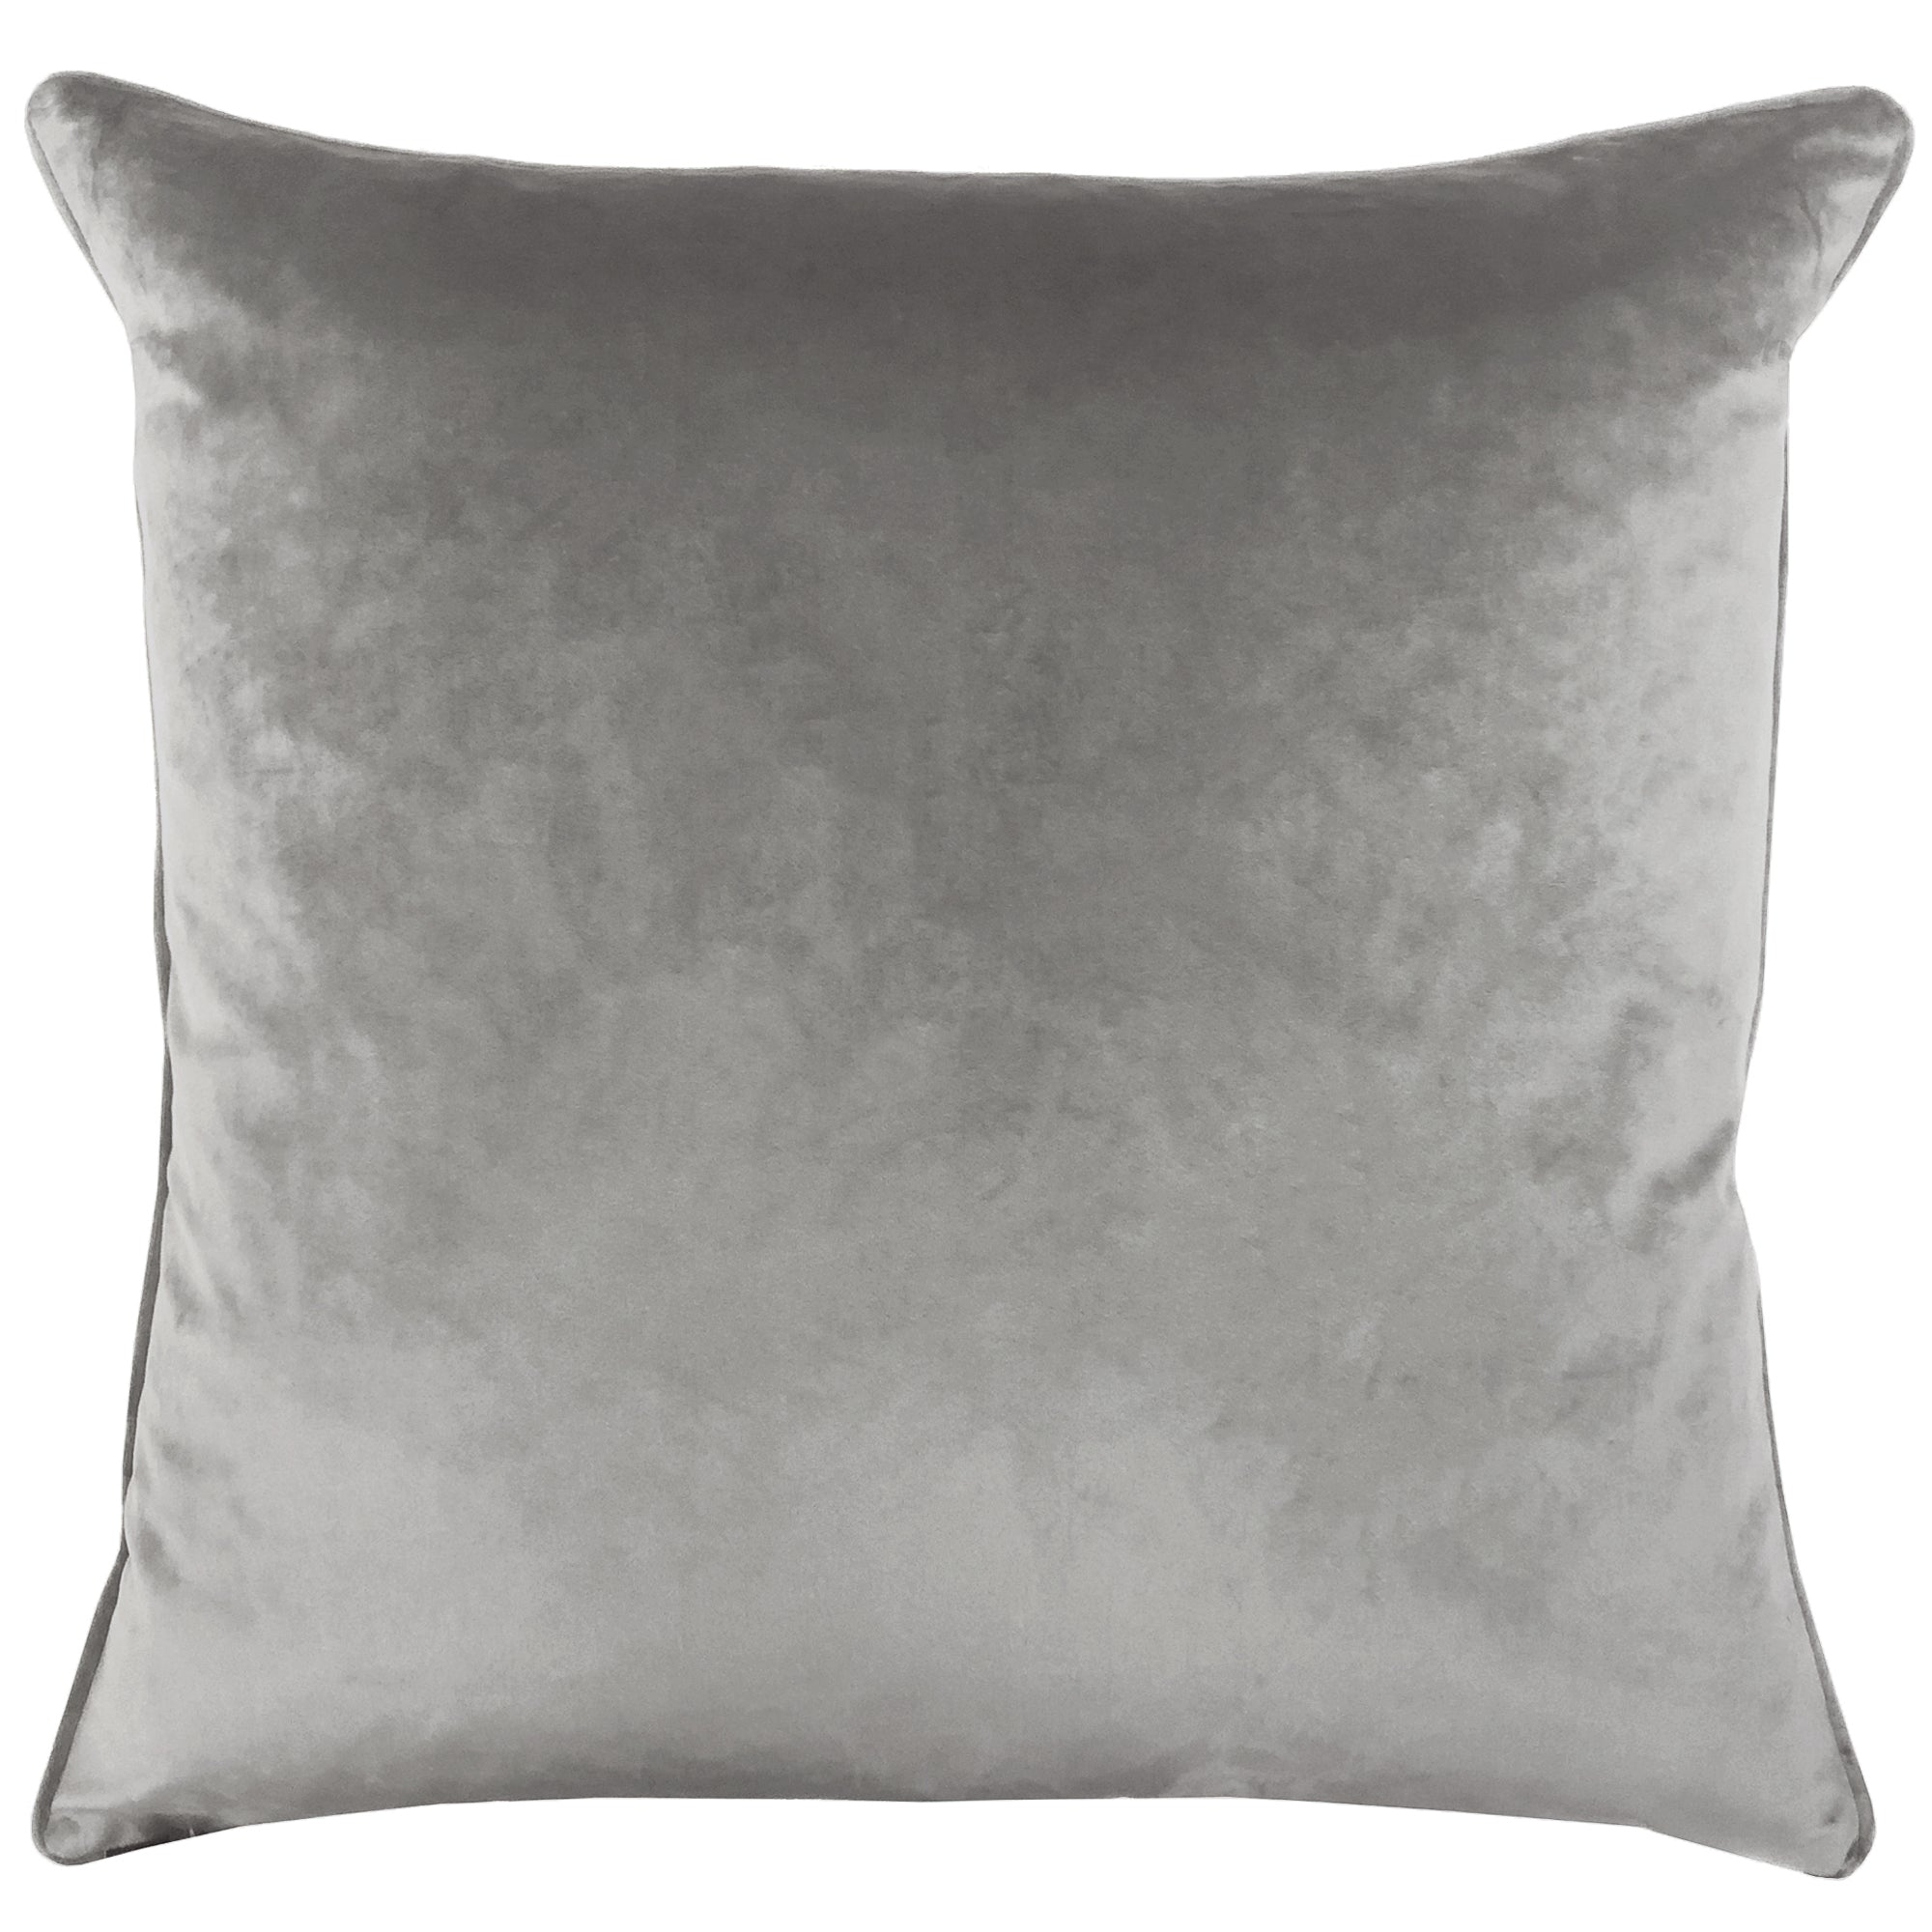 Alaya Pillows | Size 24X24